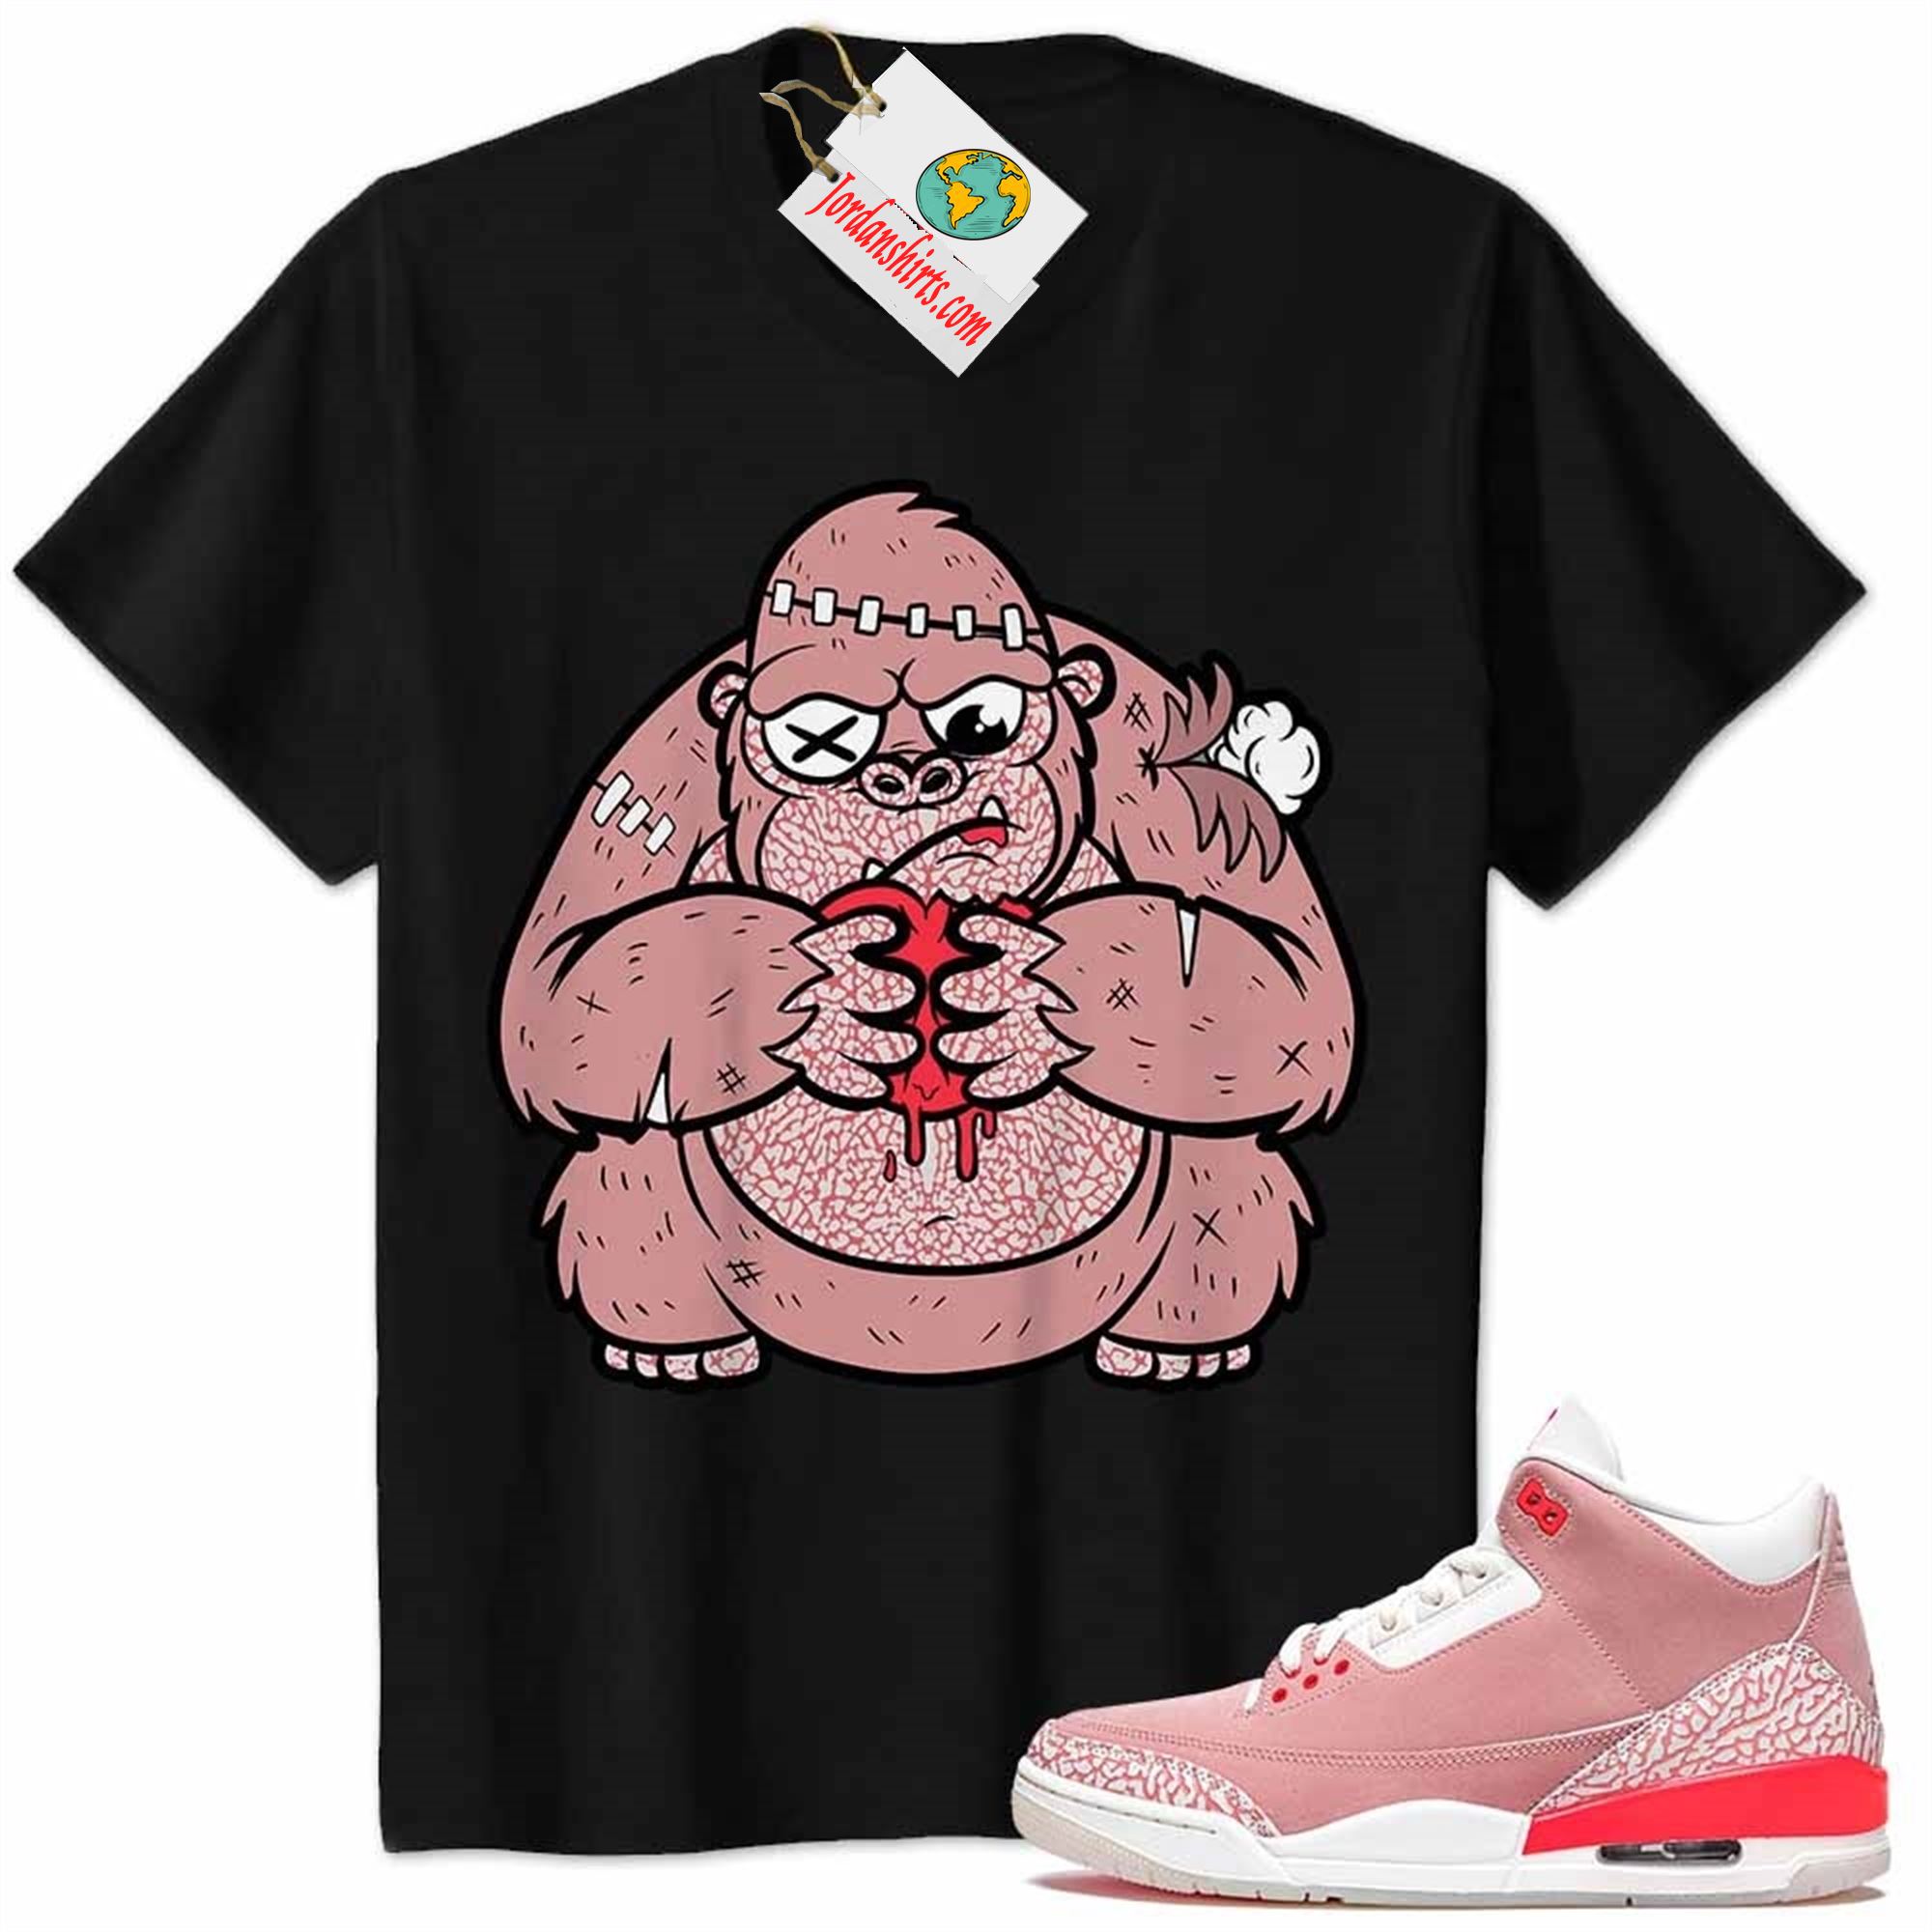 Jordan 3 Shirt, Cute Monkey Broken Heart Black Air Jordan 3 Rust Pink 3s Size Up To 5xl